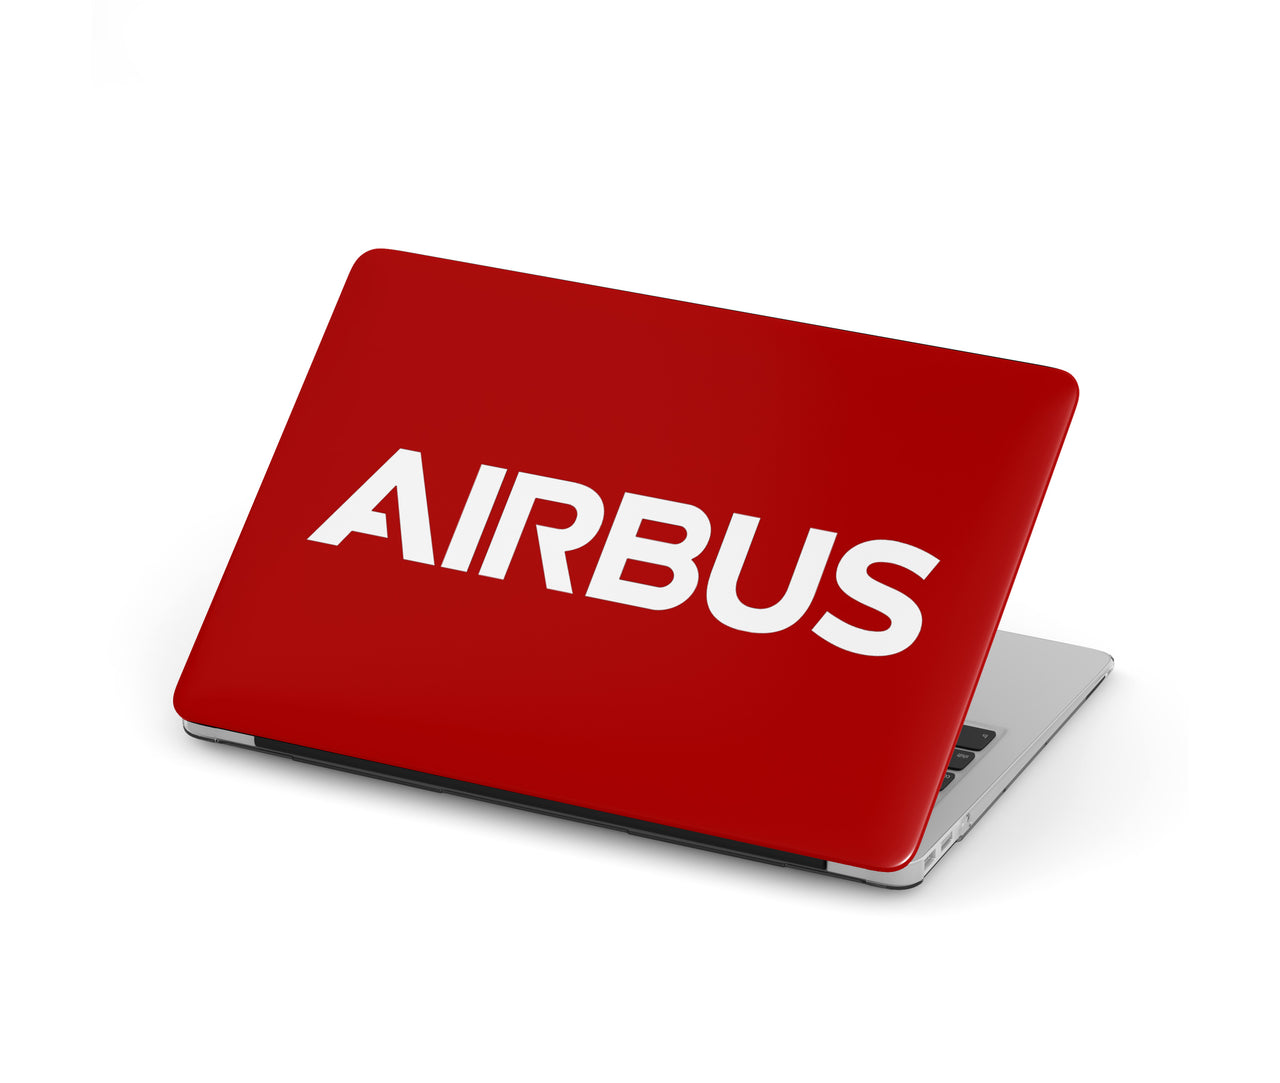 Airbus & Text Designed Macbook Cases